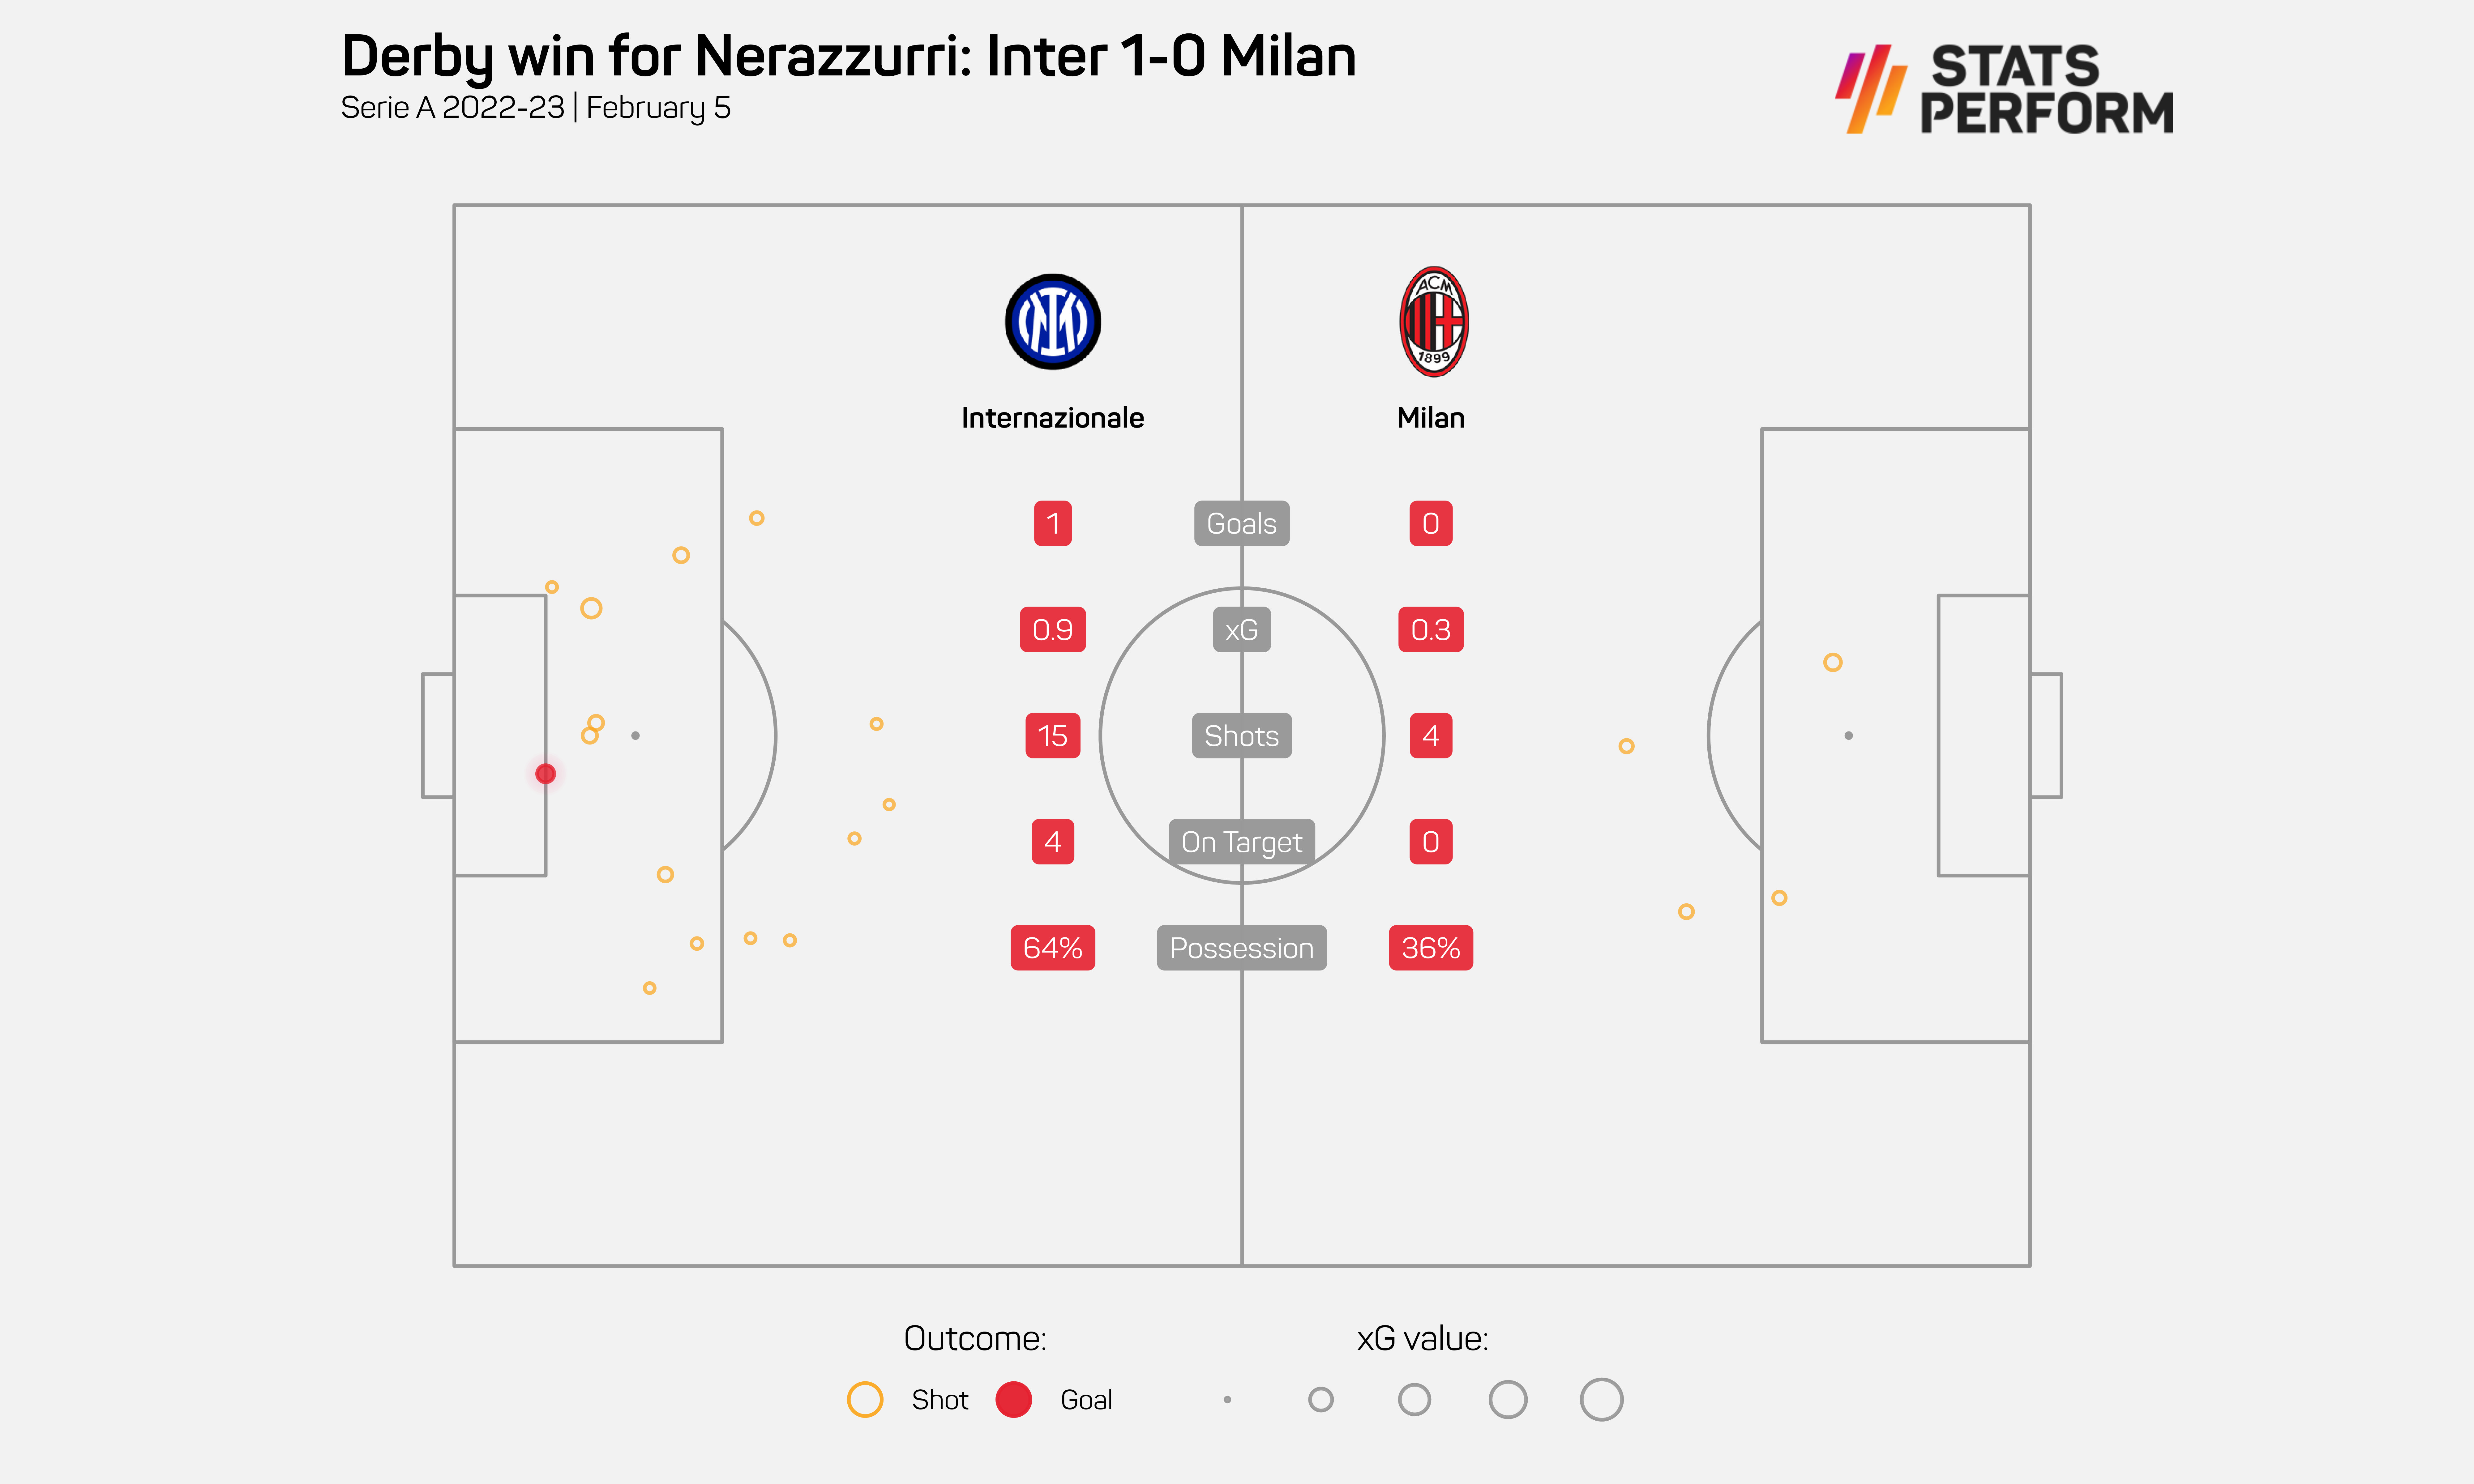 Inter 1-0 Milan